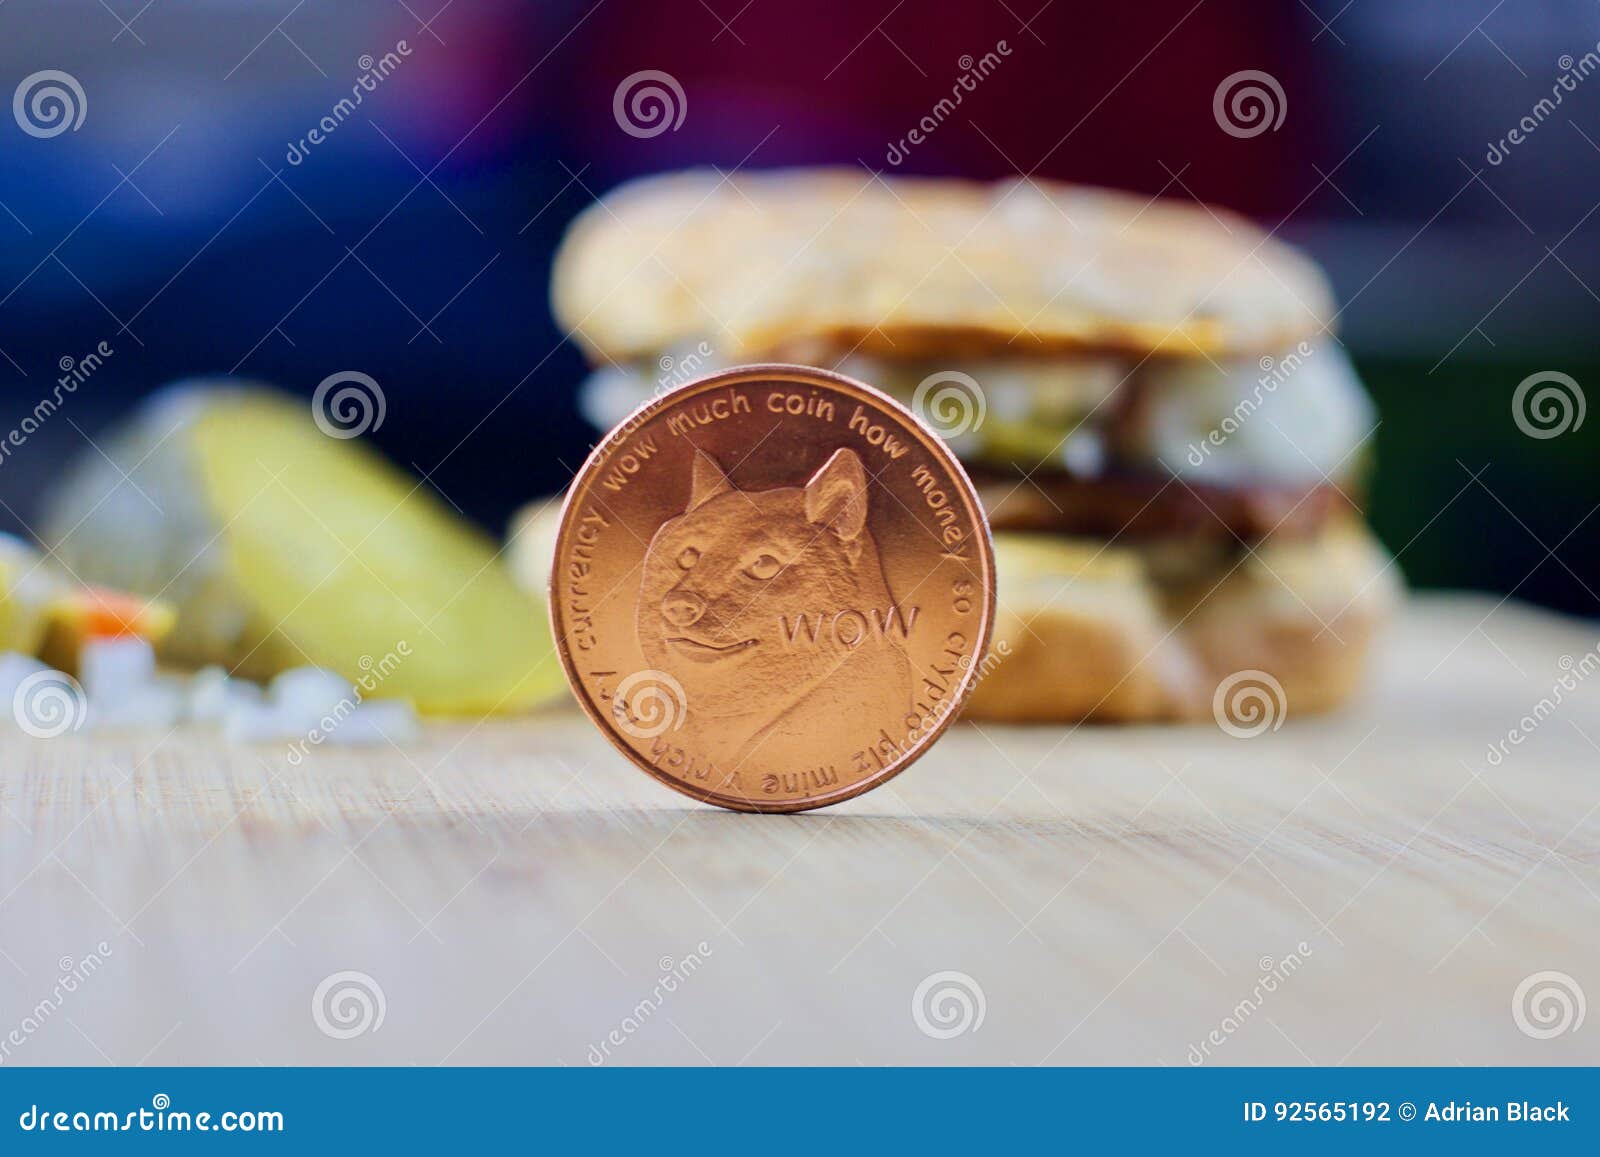 burger coin crypto